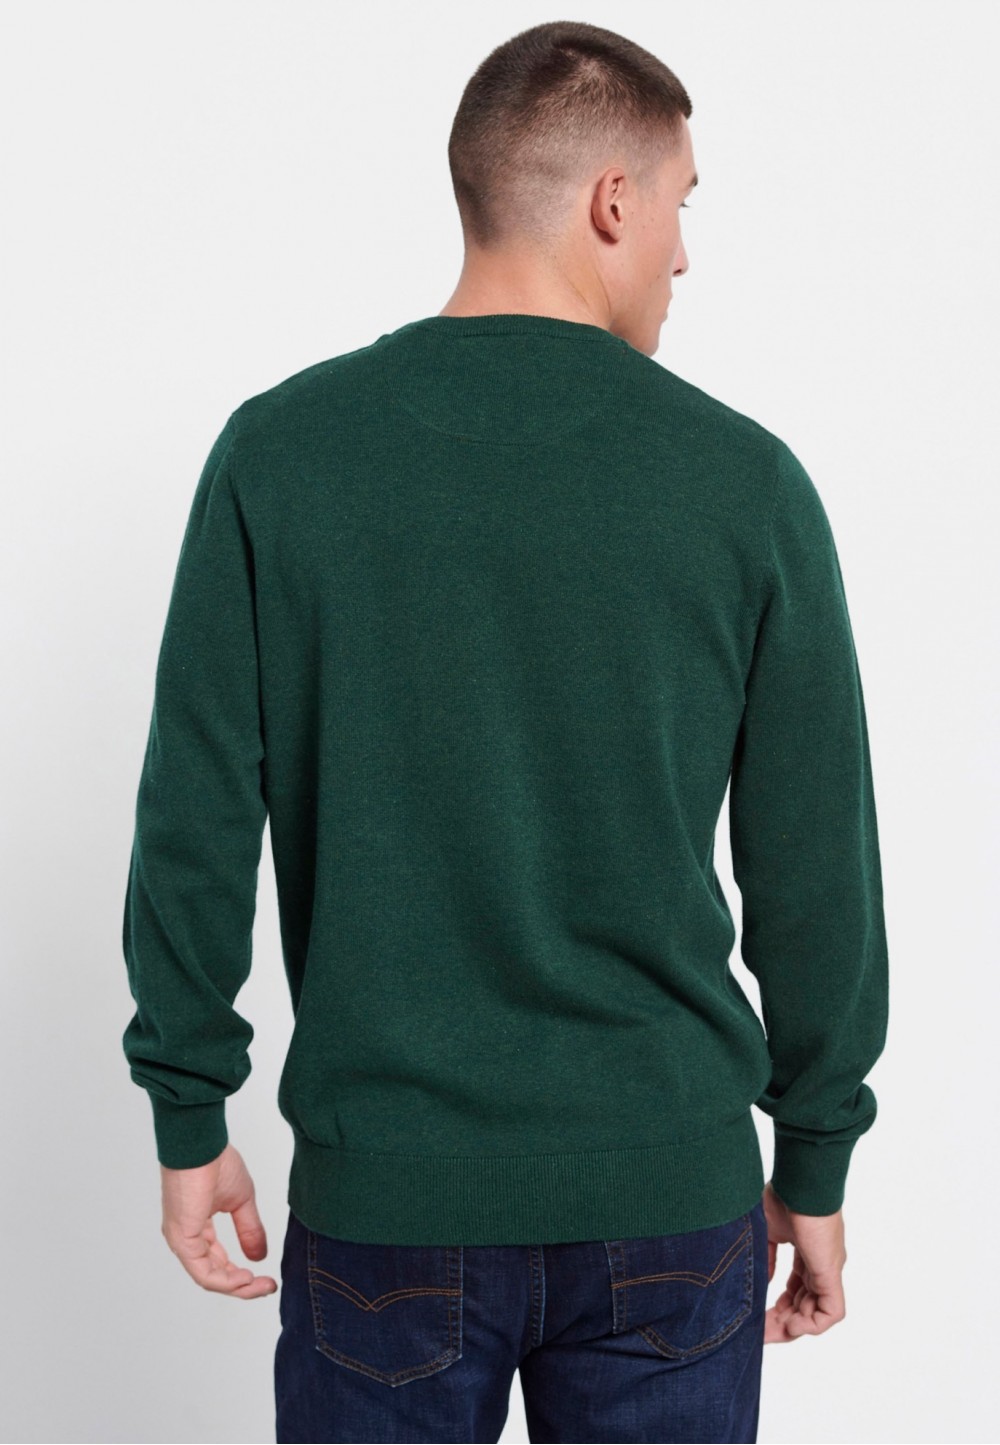 Мужской пуловер в насыщенном зеленом цвете